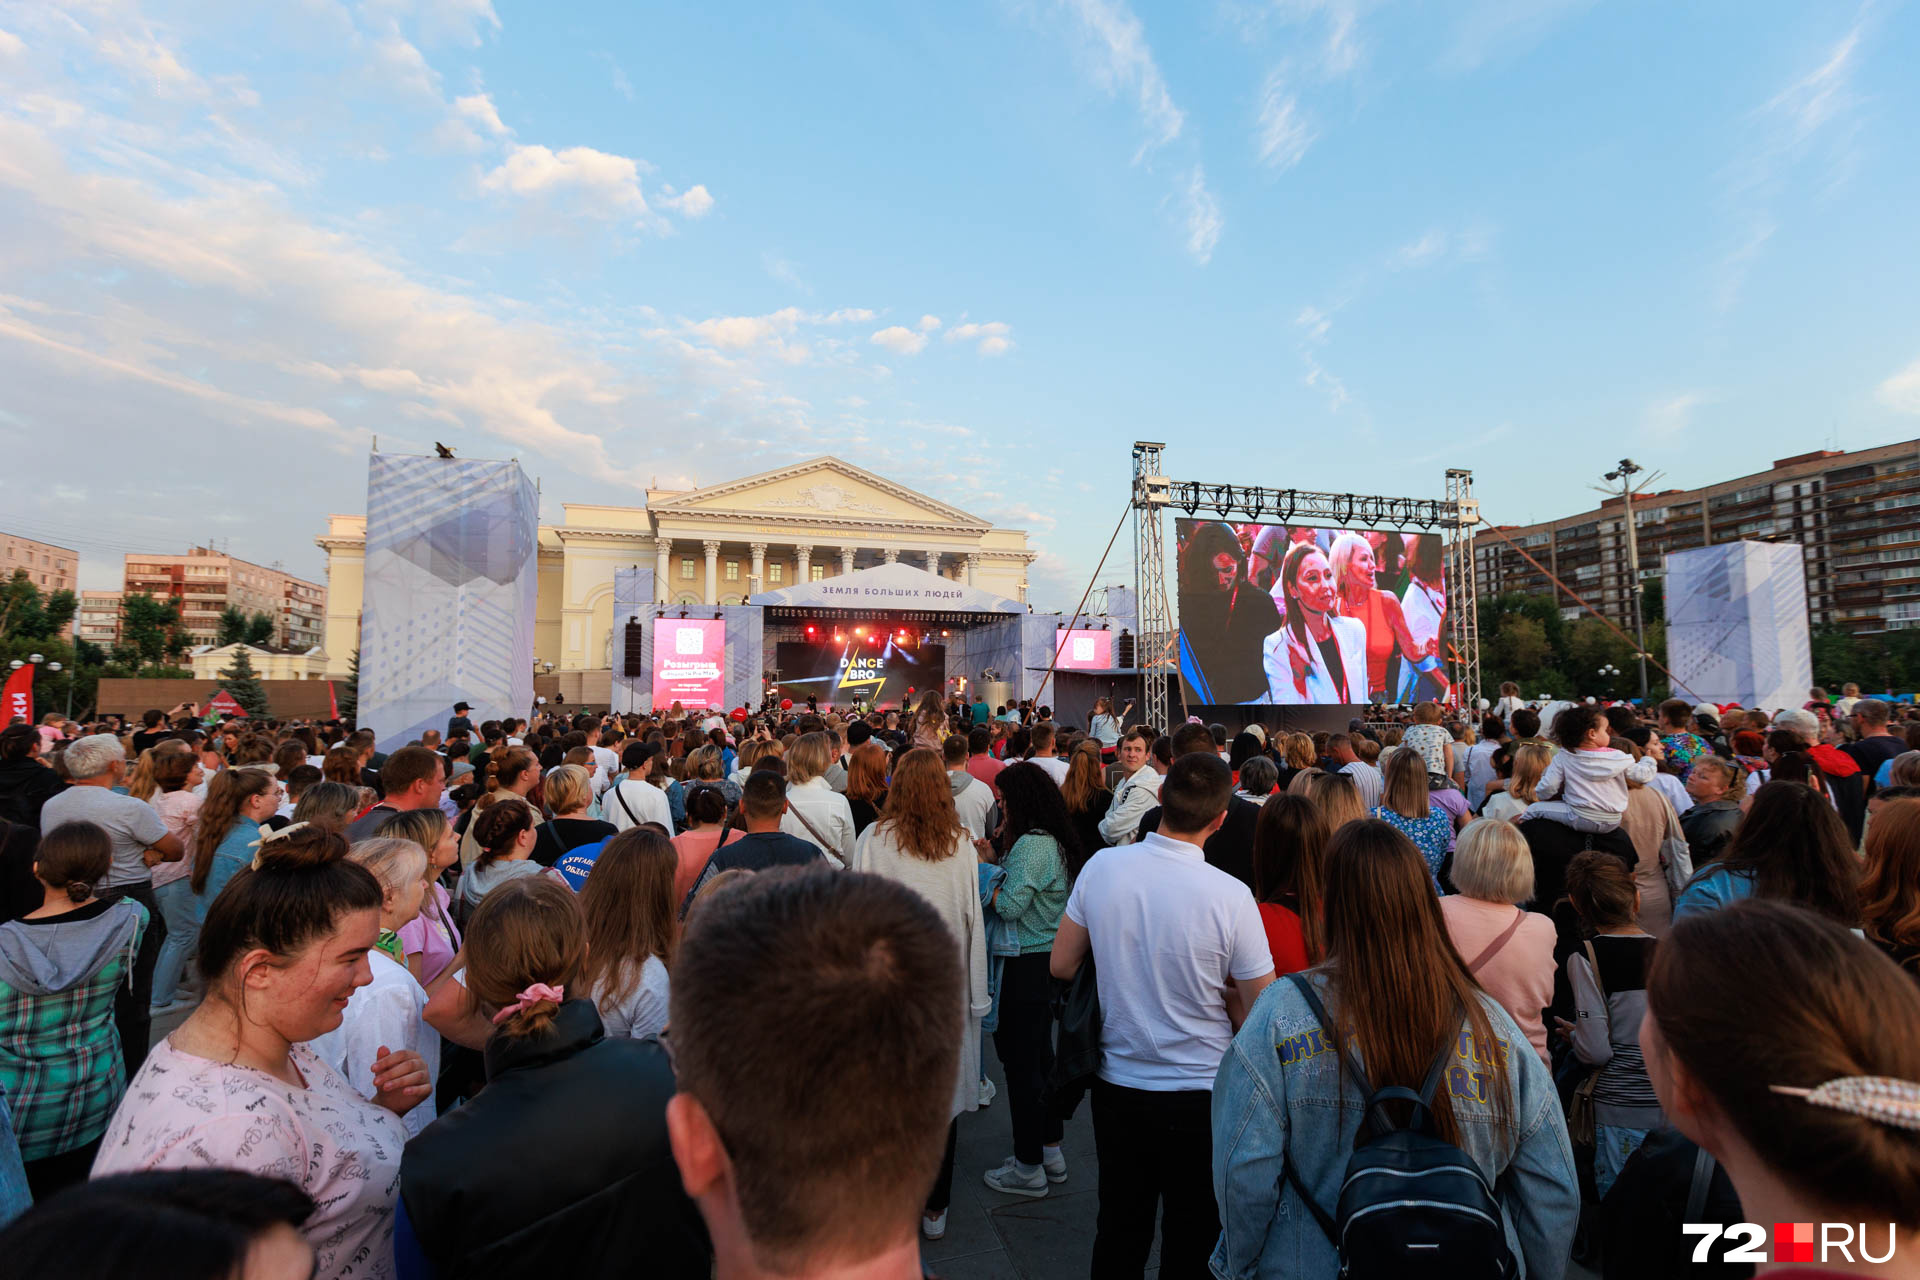 Как и ожидалось, на концерт пришли десятки тысяч человек. Вполне возможно, что около 35 тысяч тюменцев и гостей города. Как предполагали организаторы